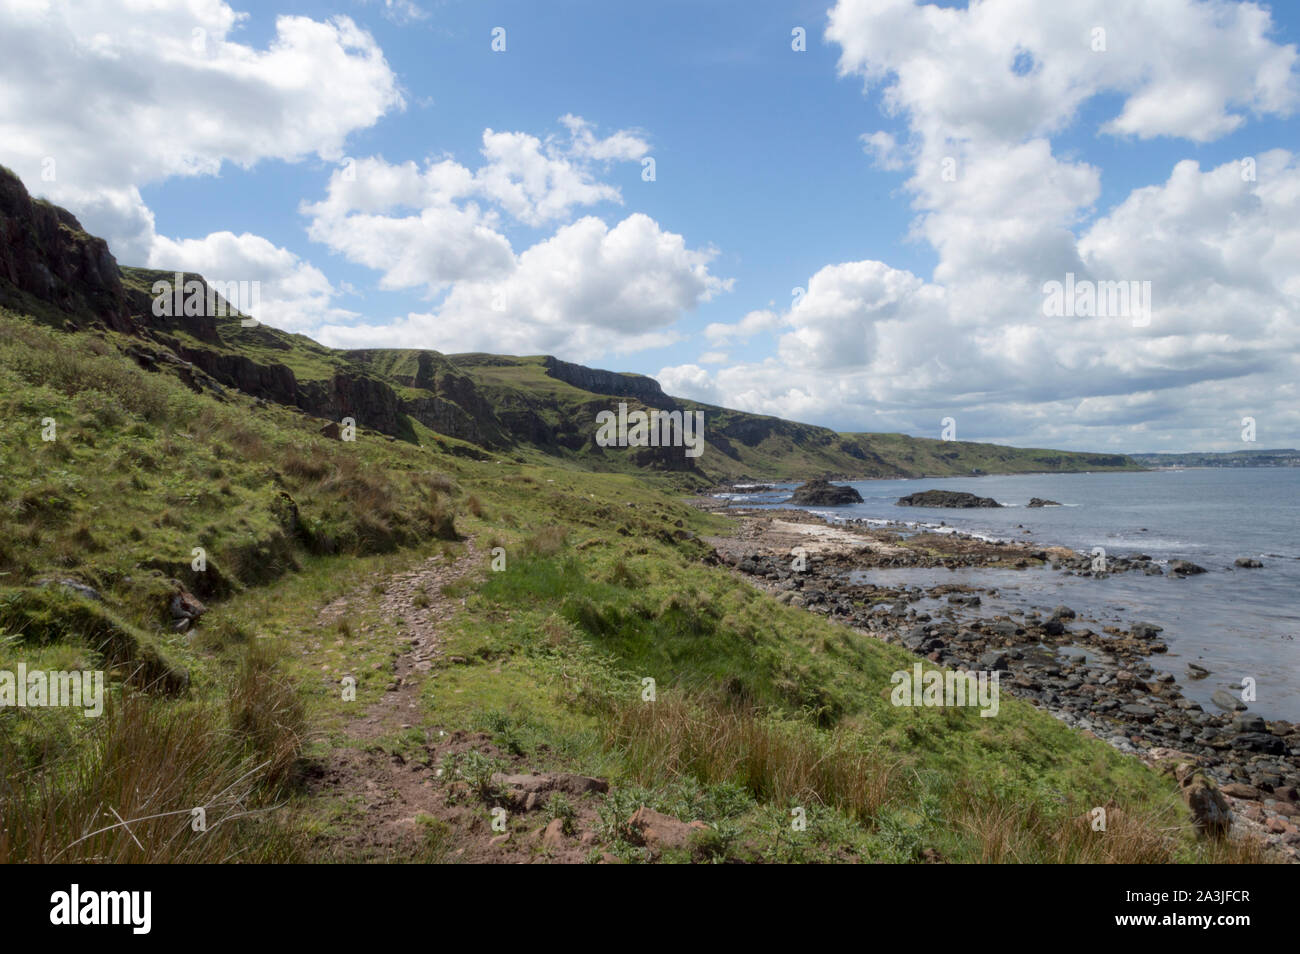 Ruta Costera, de la costa norte, en el Condado de Antrim, Irlanda del Norte Foto de stock